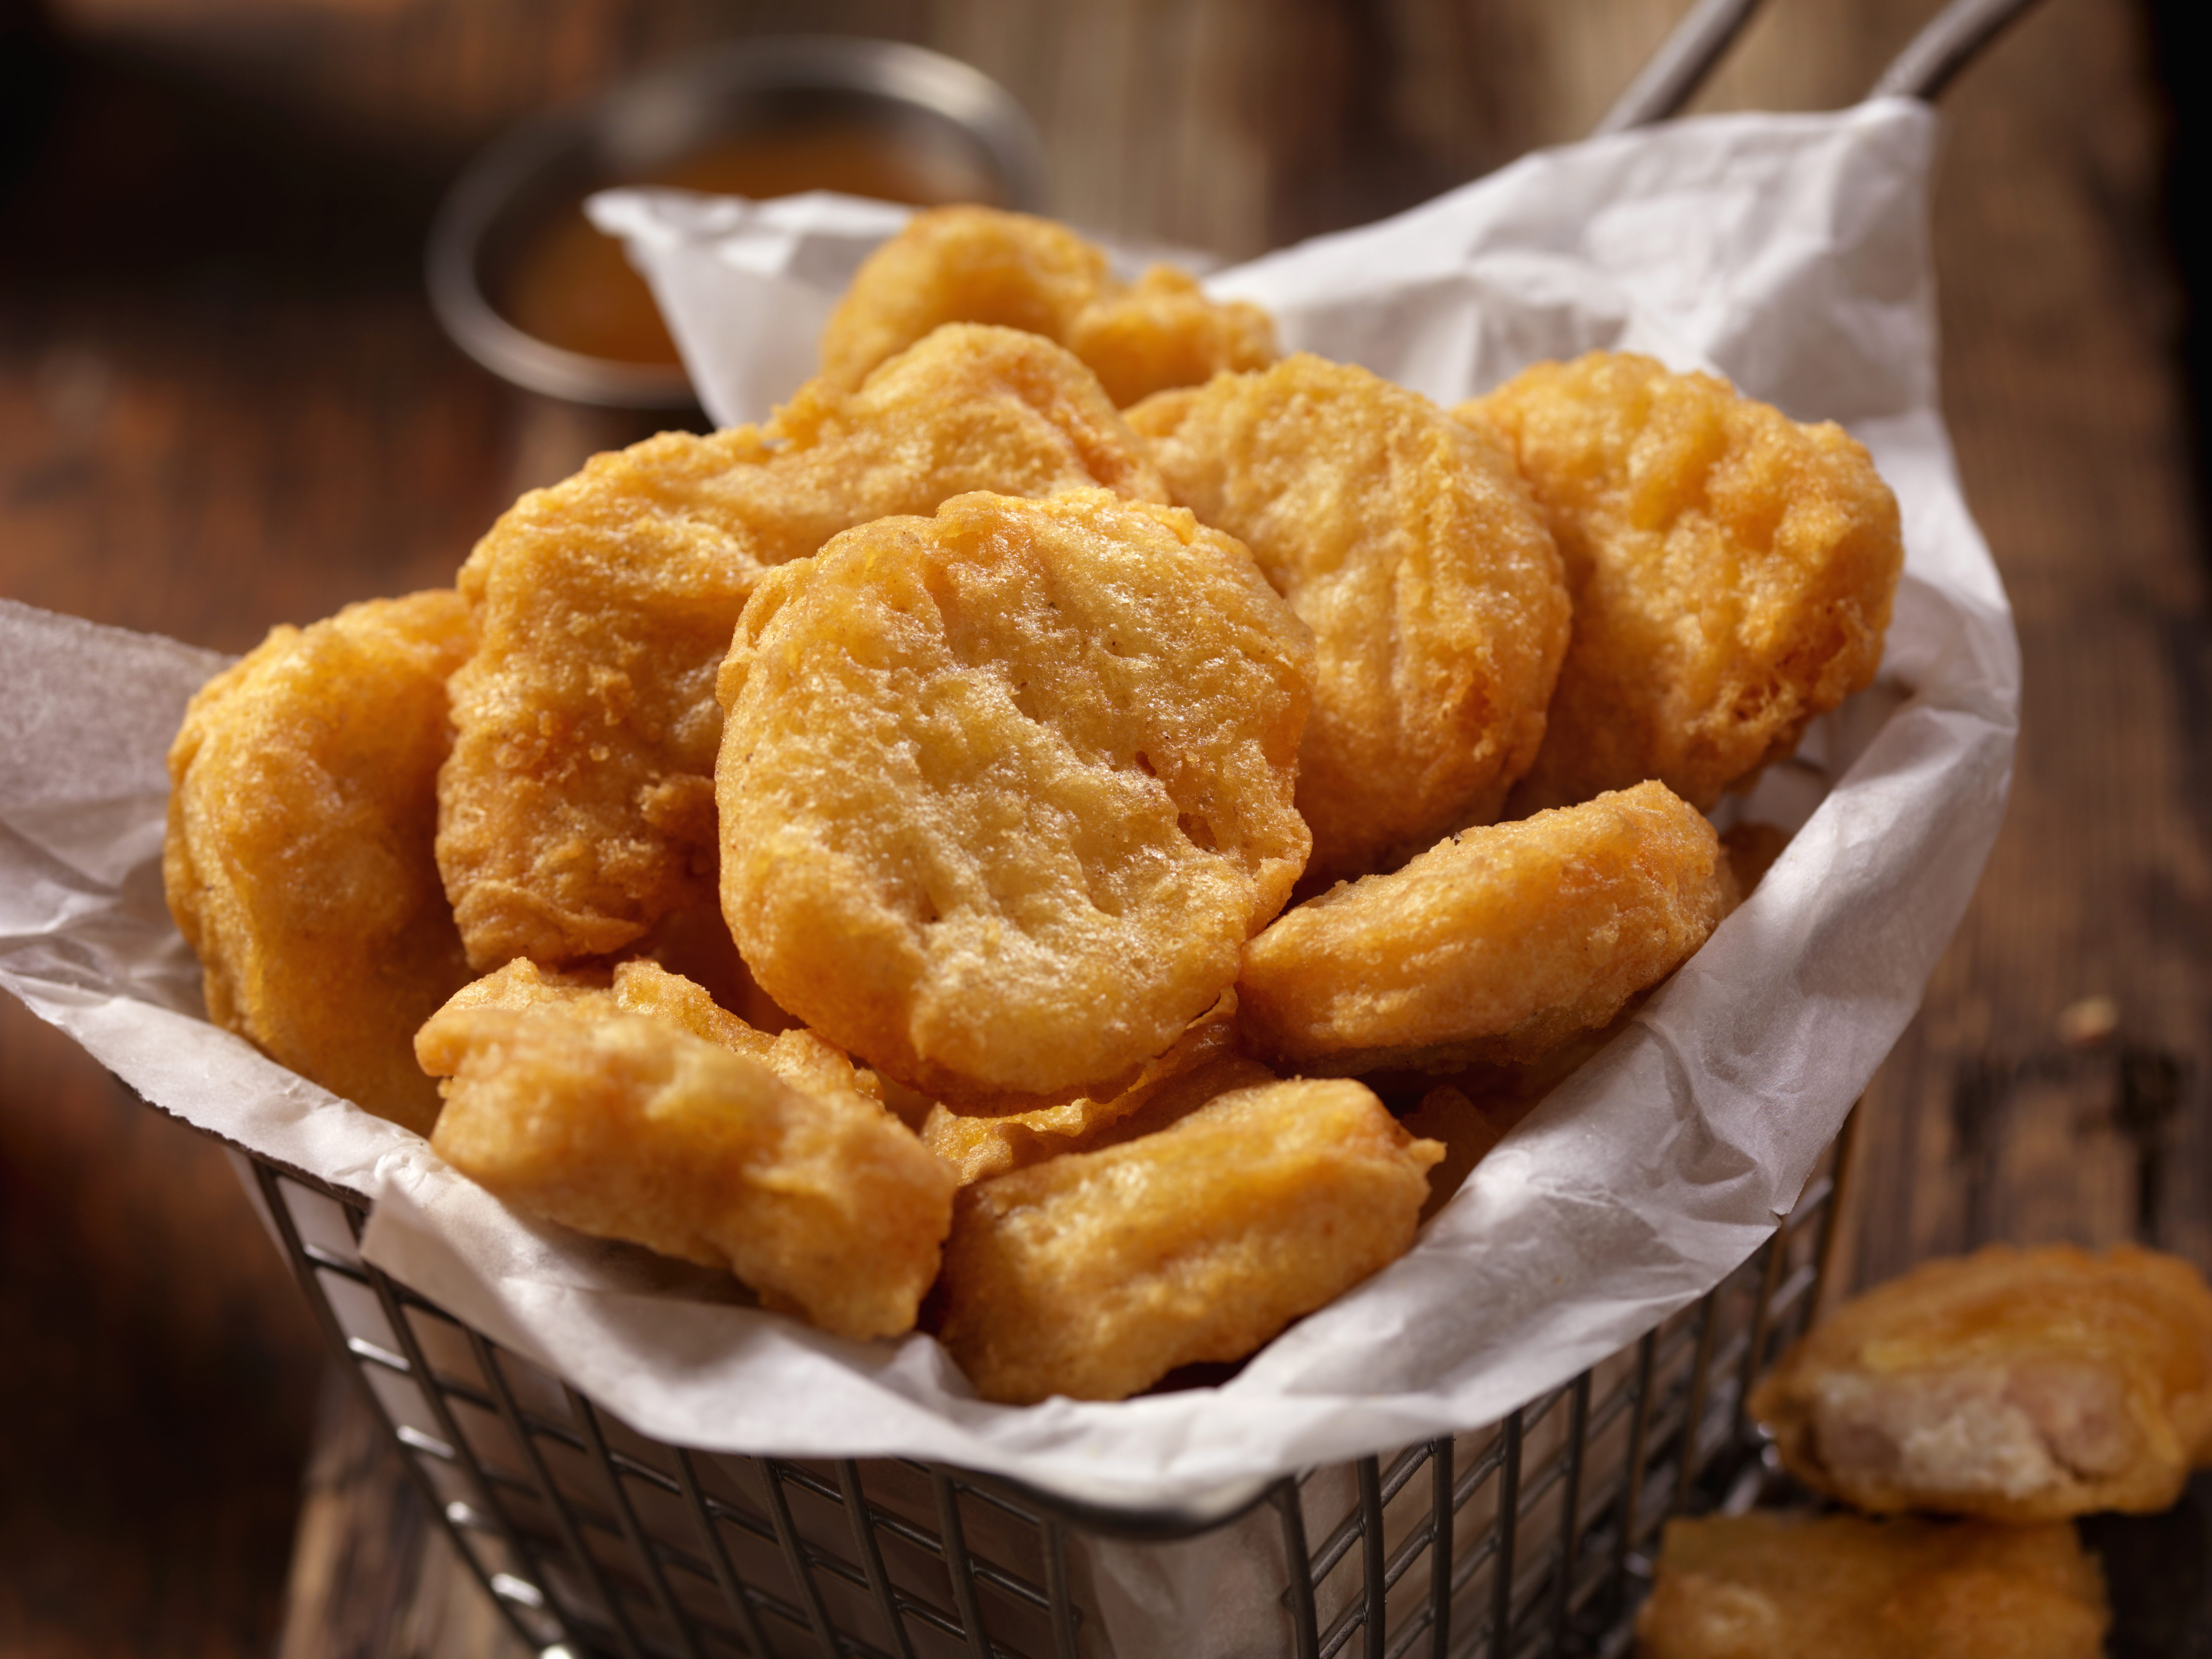 Alerta de Nuggets de pollo: estas son las peores marcas de alimentos congelados de acuerdo a Profeco